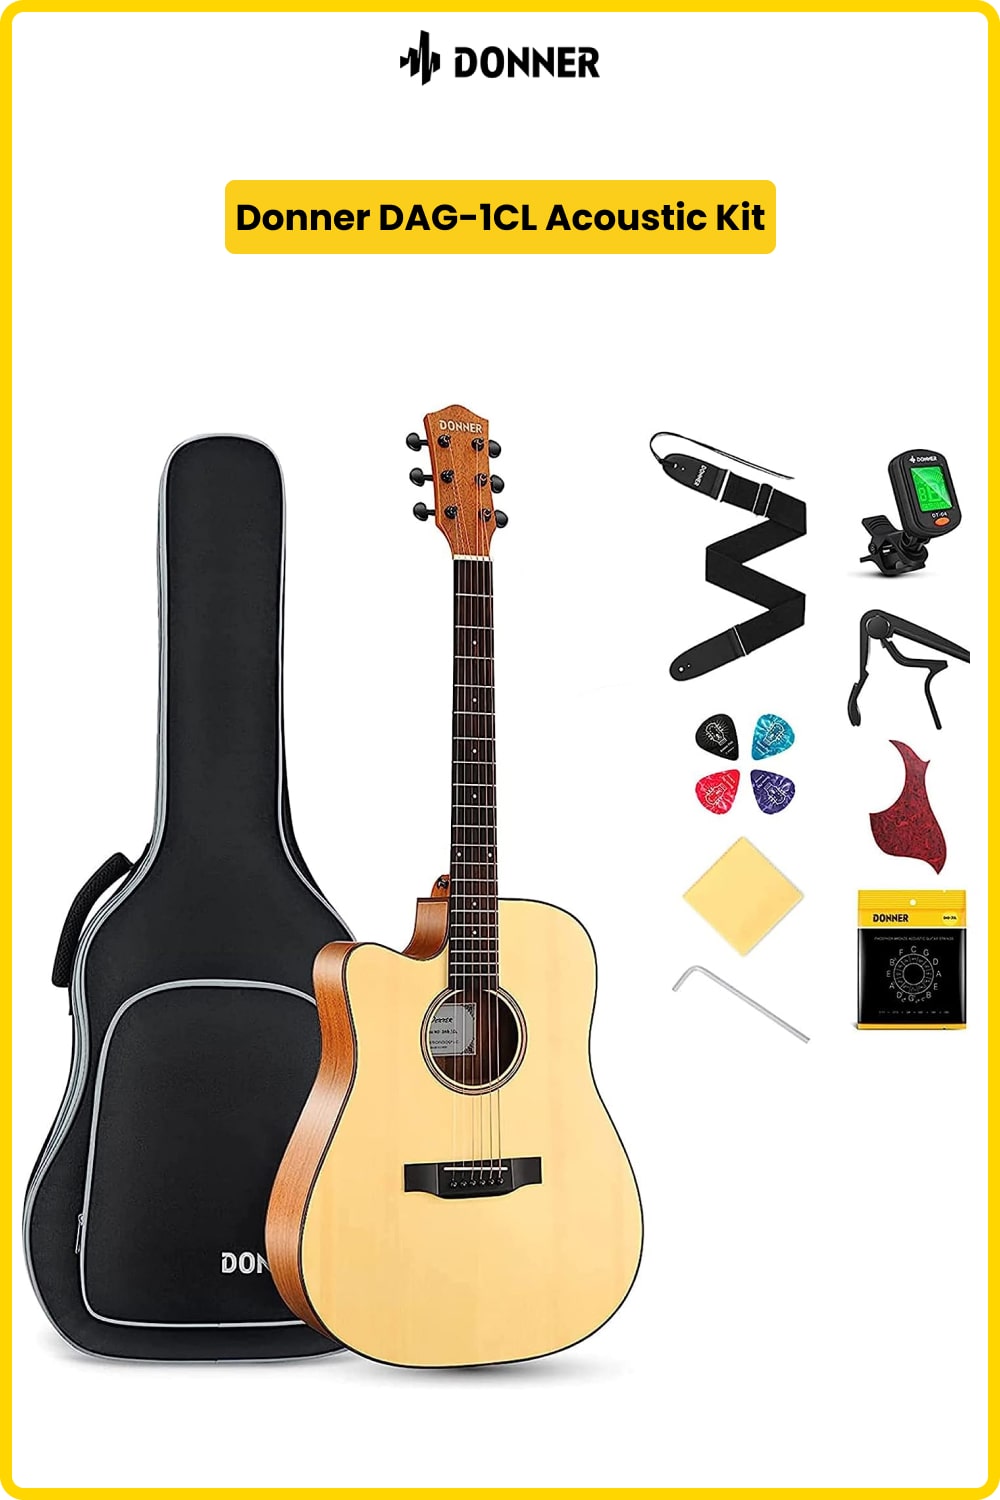 Left-Handed Donner DAG-1CL Acoustic Guitar Kit